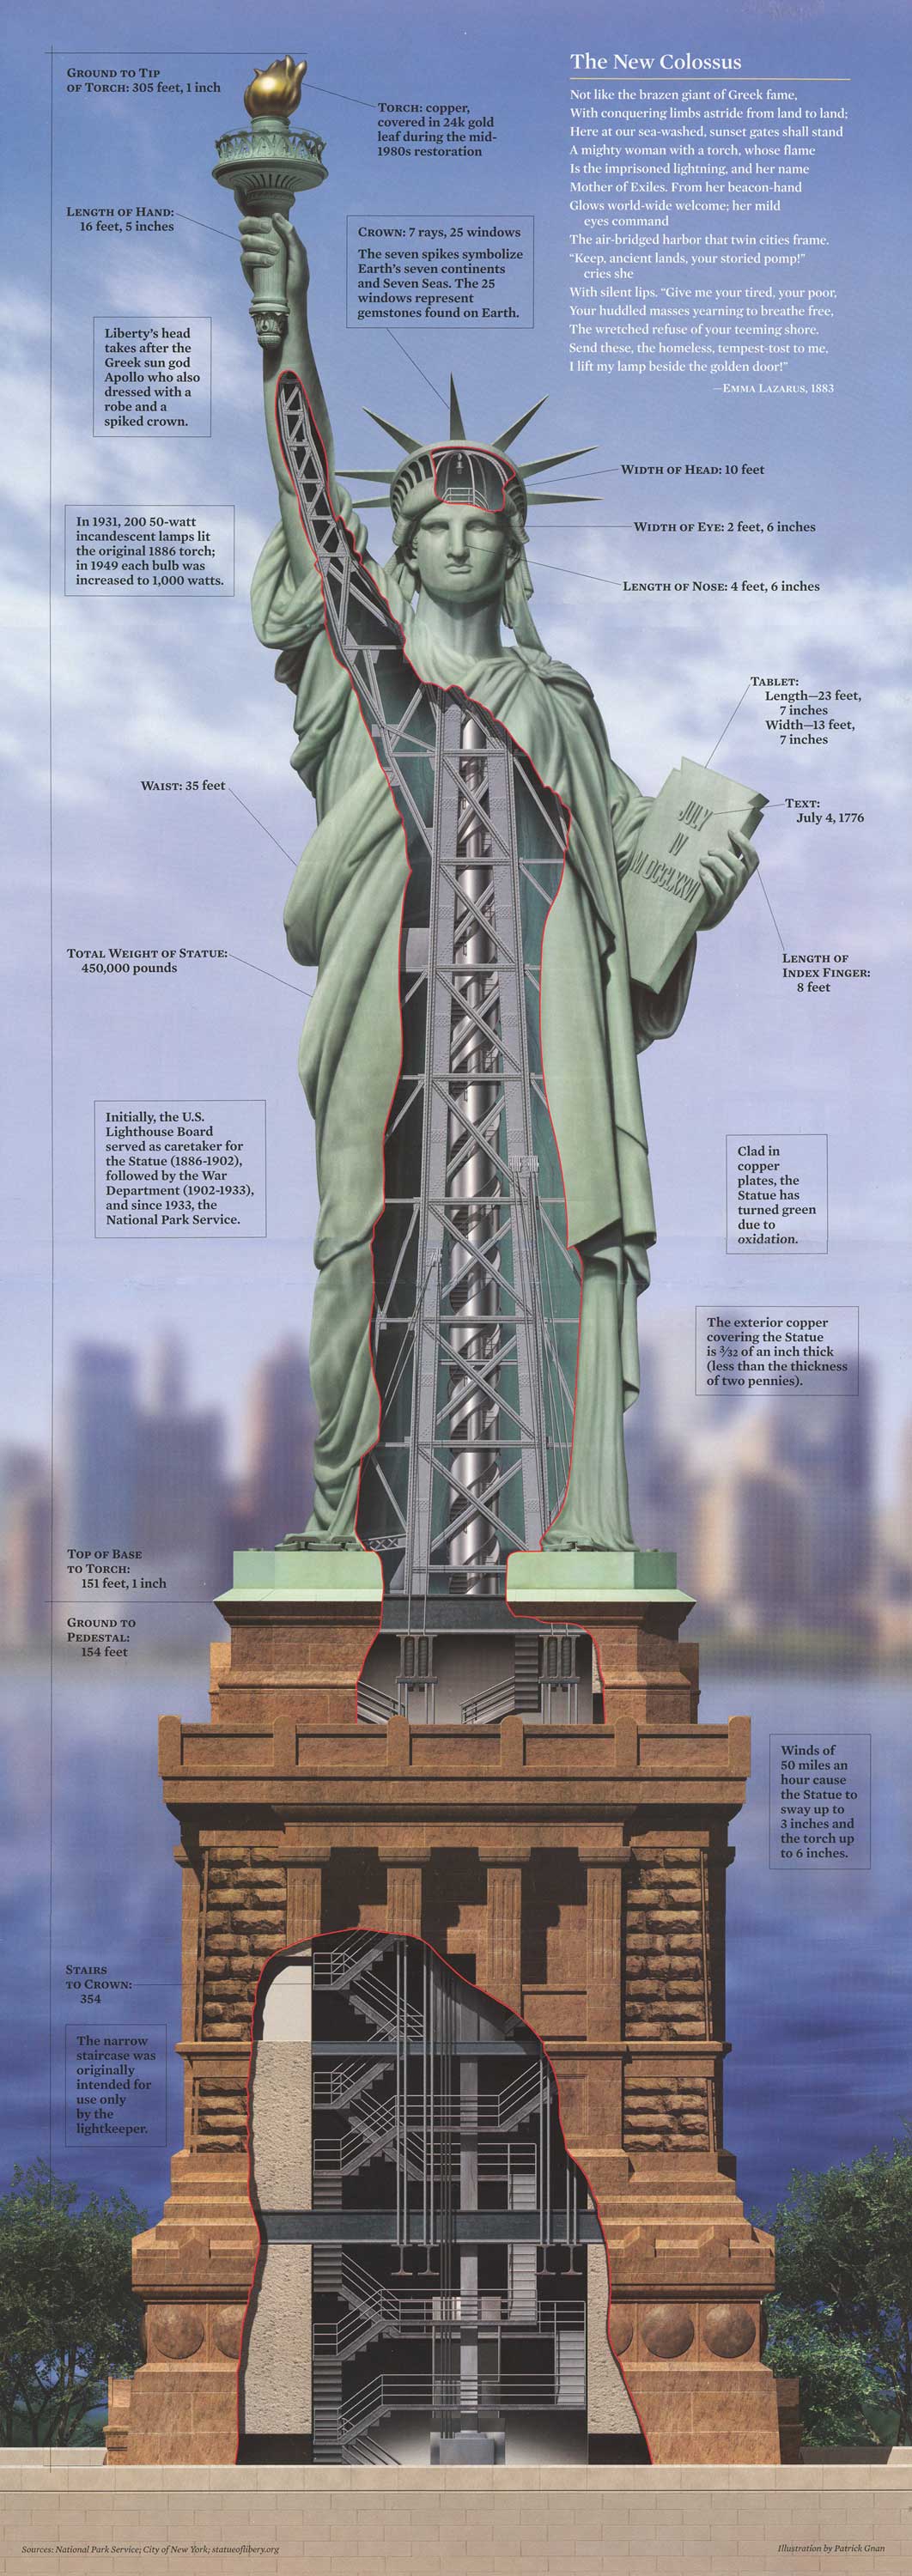 Статуя свободы могла быть более сексуальной (The Huffington Post, США) | , ИноСМИ